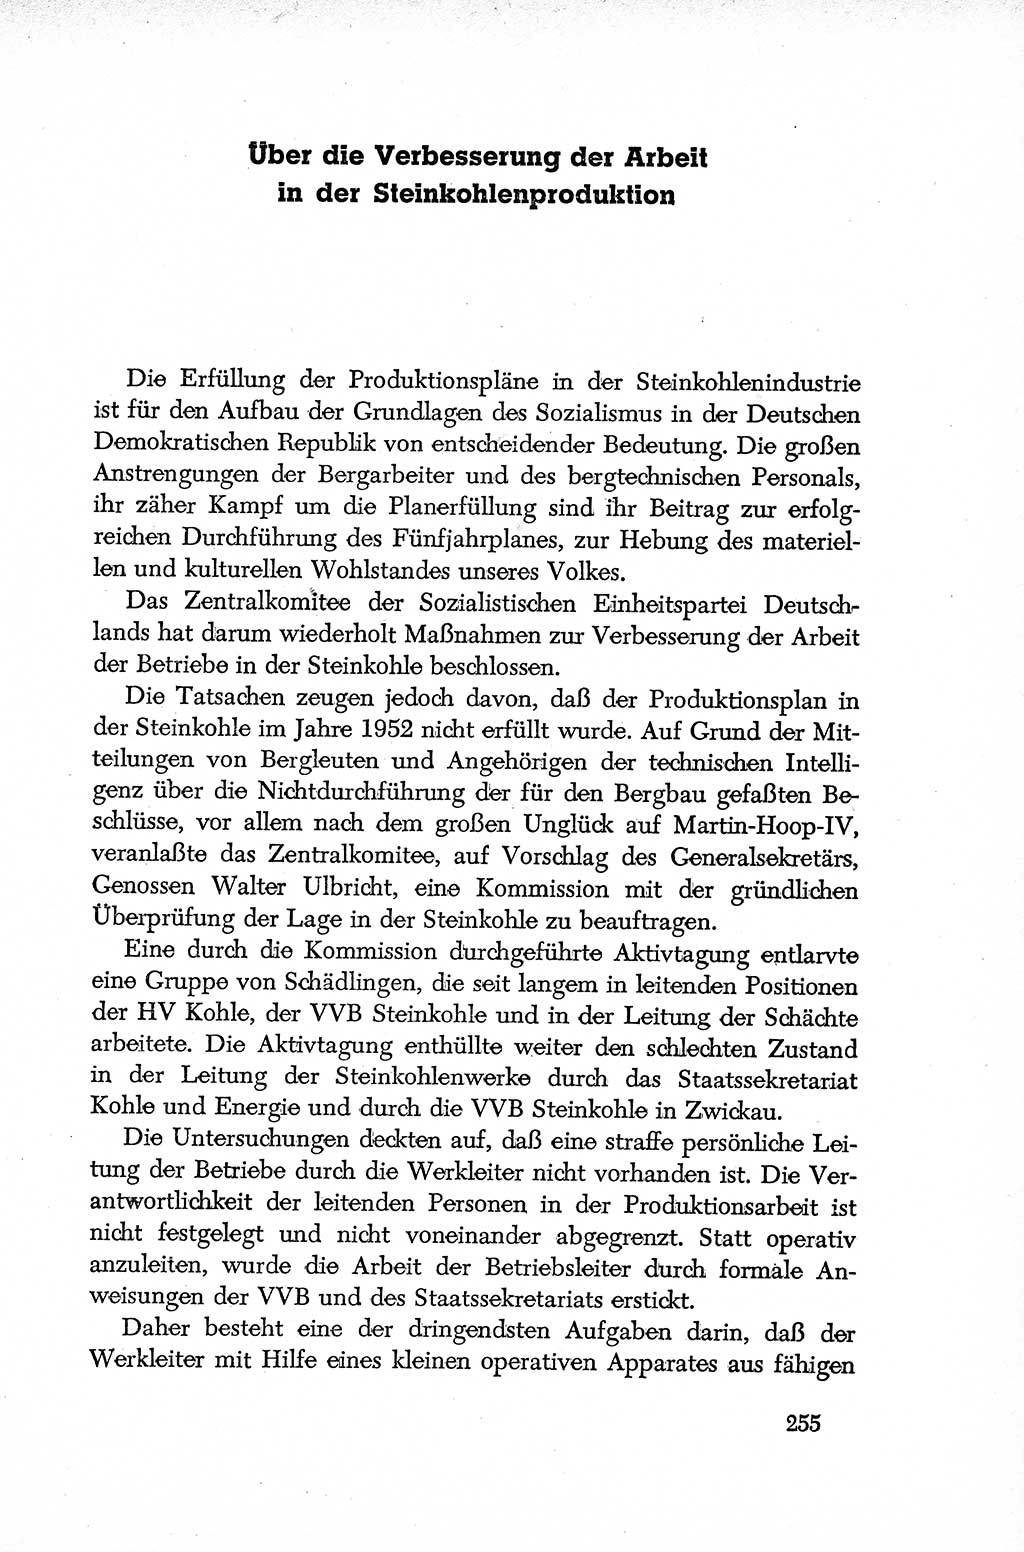 Dokumente der Sozialistischen Einheitspartei Deutschlands (SED) [Deutsche Demokratische Republik (DDR)] 1952-1953, Seite 255 (Dok. SED DDR 1952-1953, S. 255)